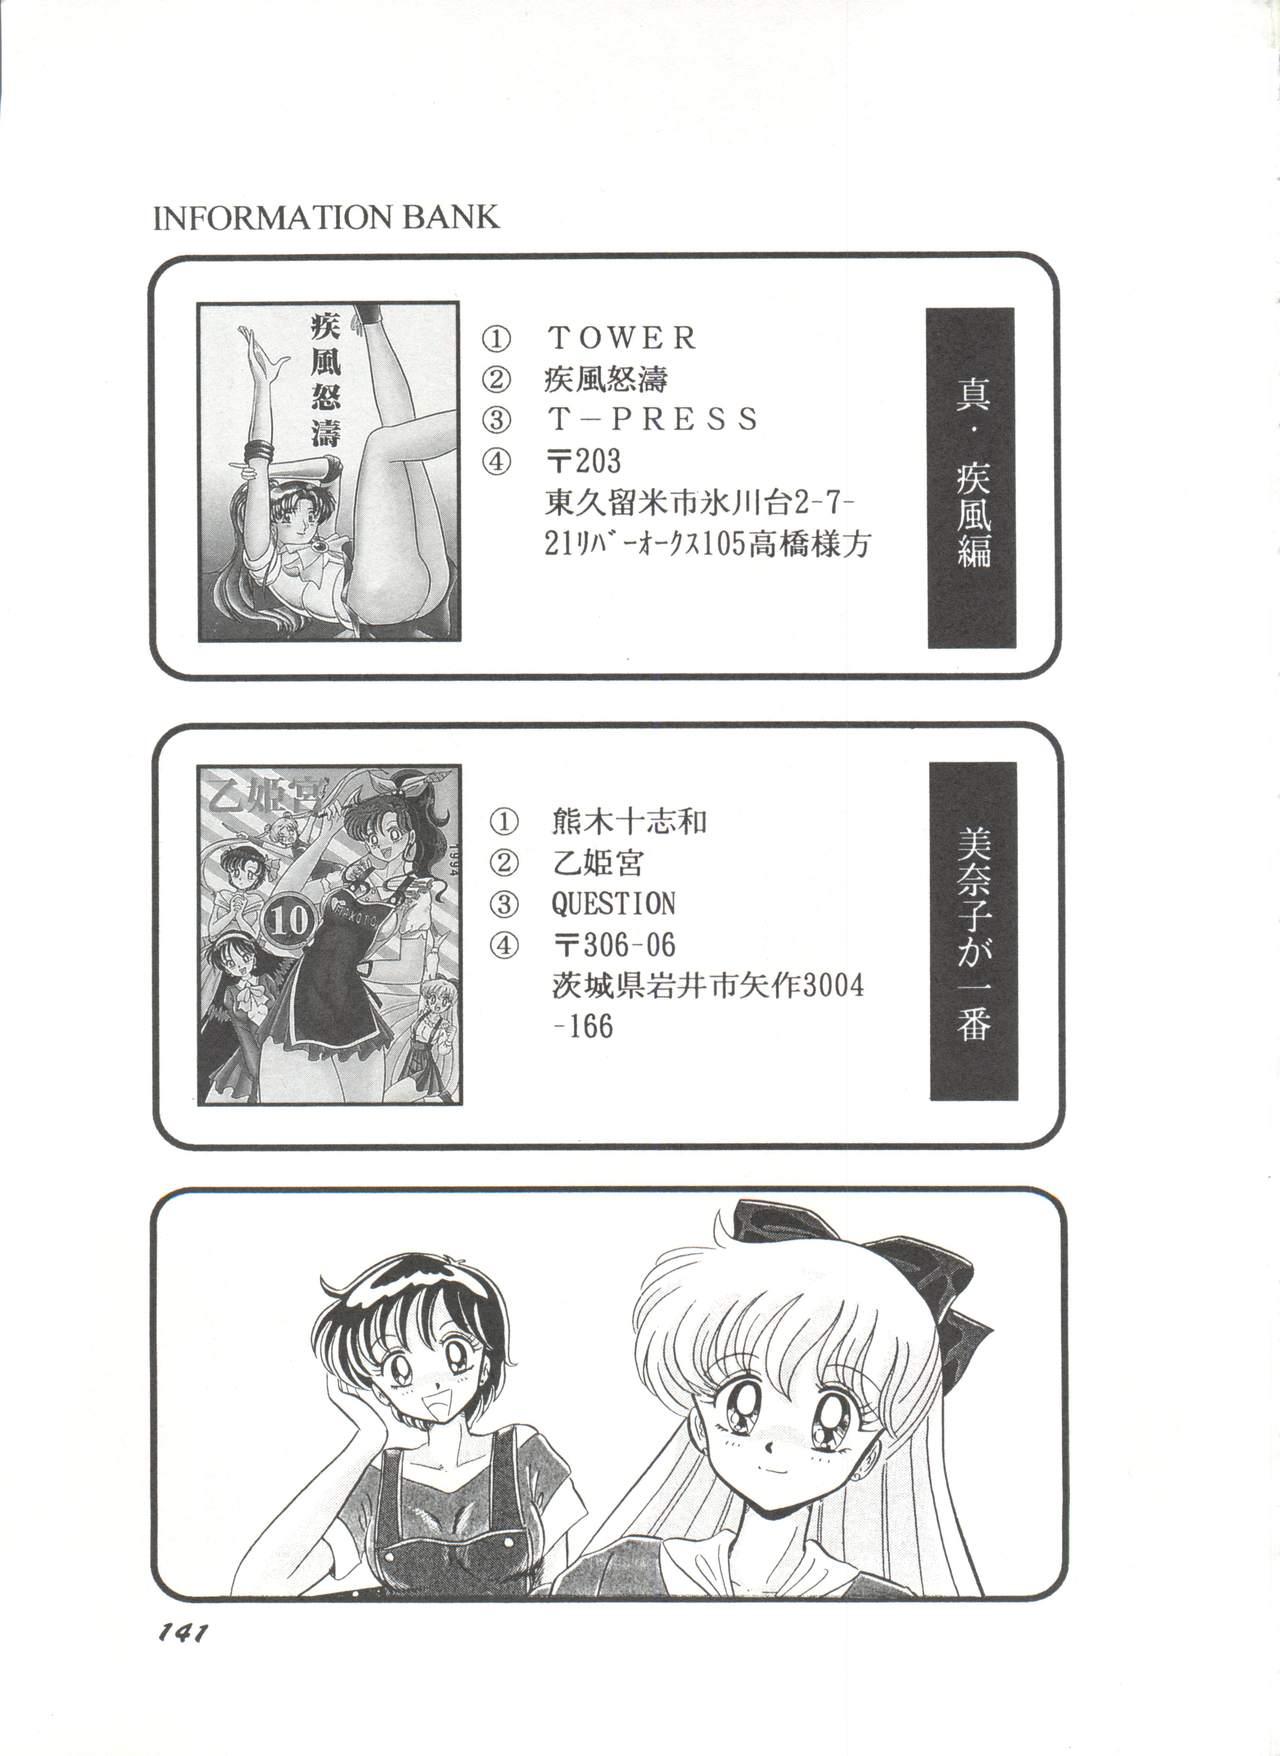 Bishoujo Doujinshi Anthology 7 - Moon Paradise 4 Tsuki no Rakuen 145